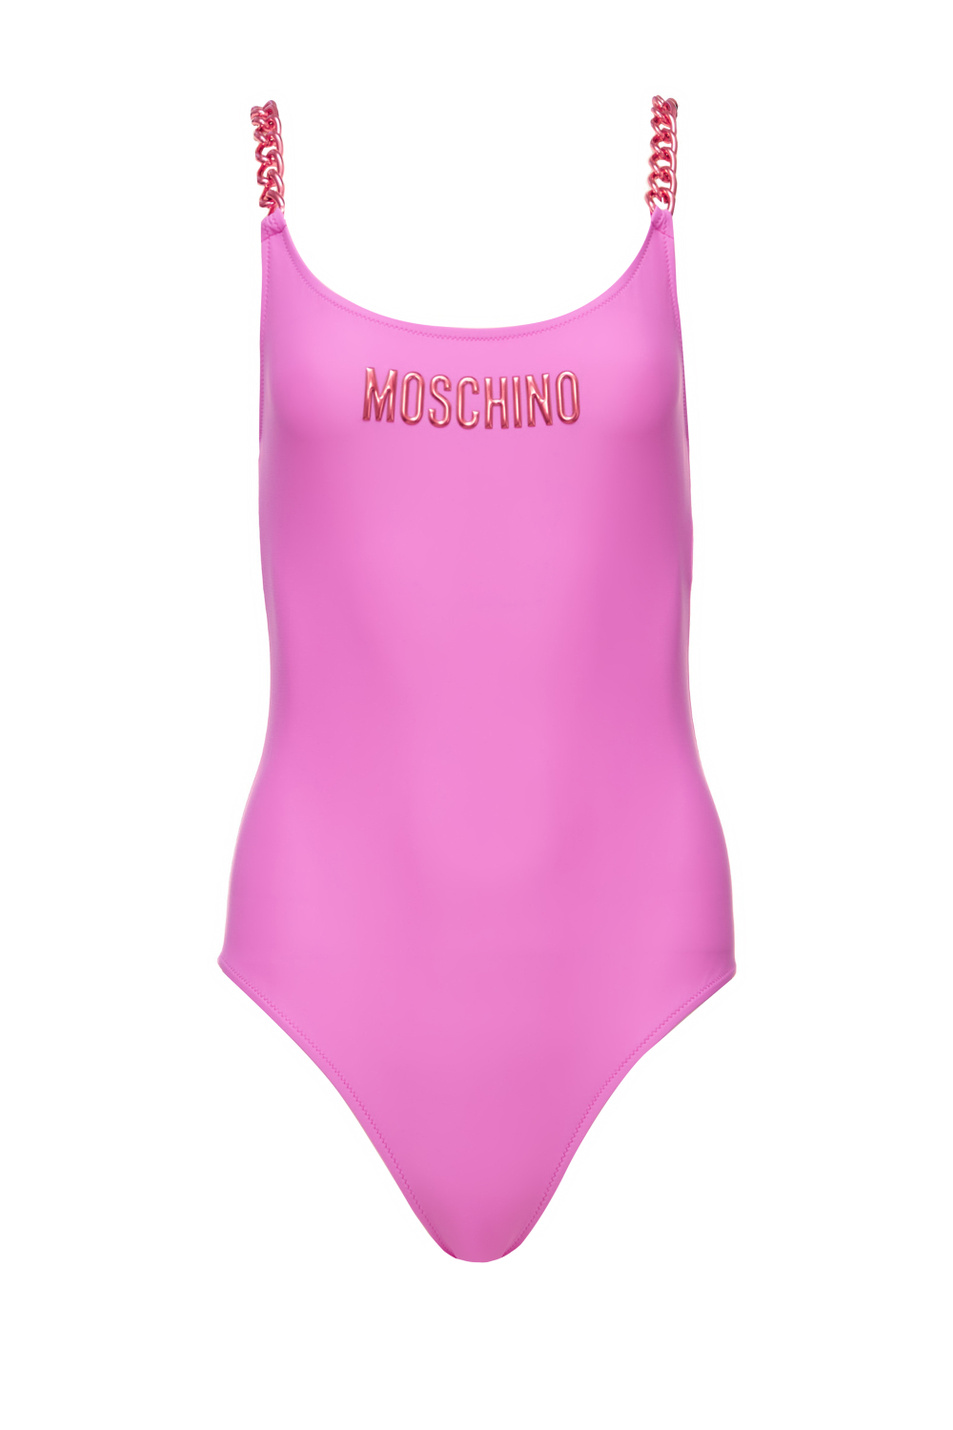 Moschino Слитный купальник с логотипом и бретелями в виде цепочек (цвет ), артикул A8117-5211 | Фото 1